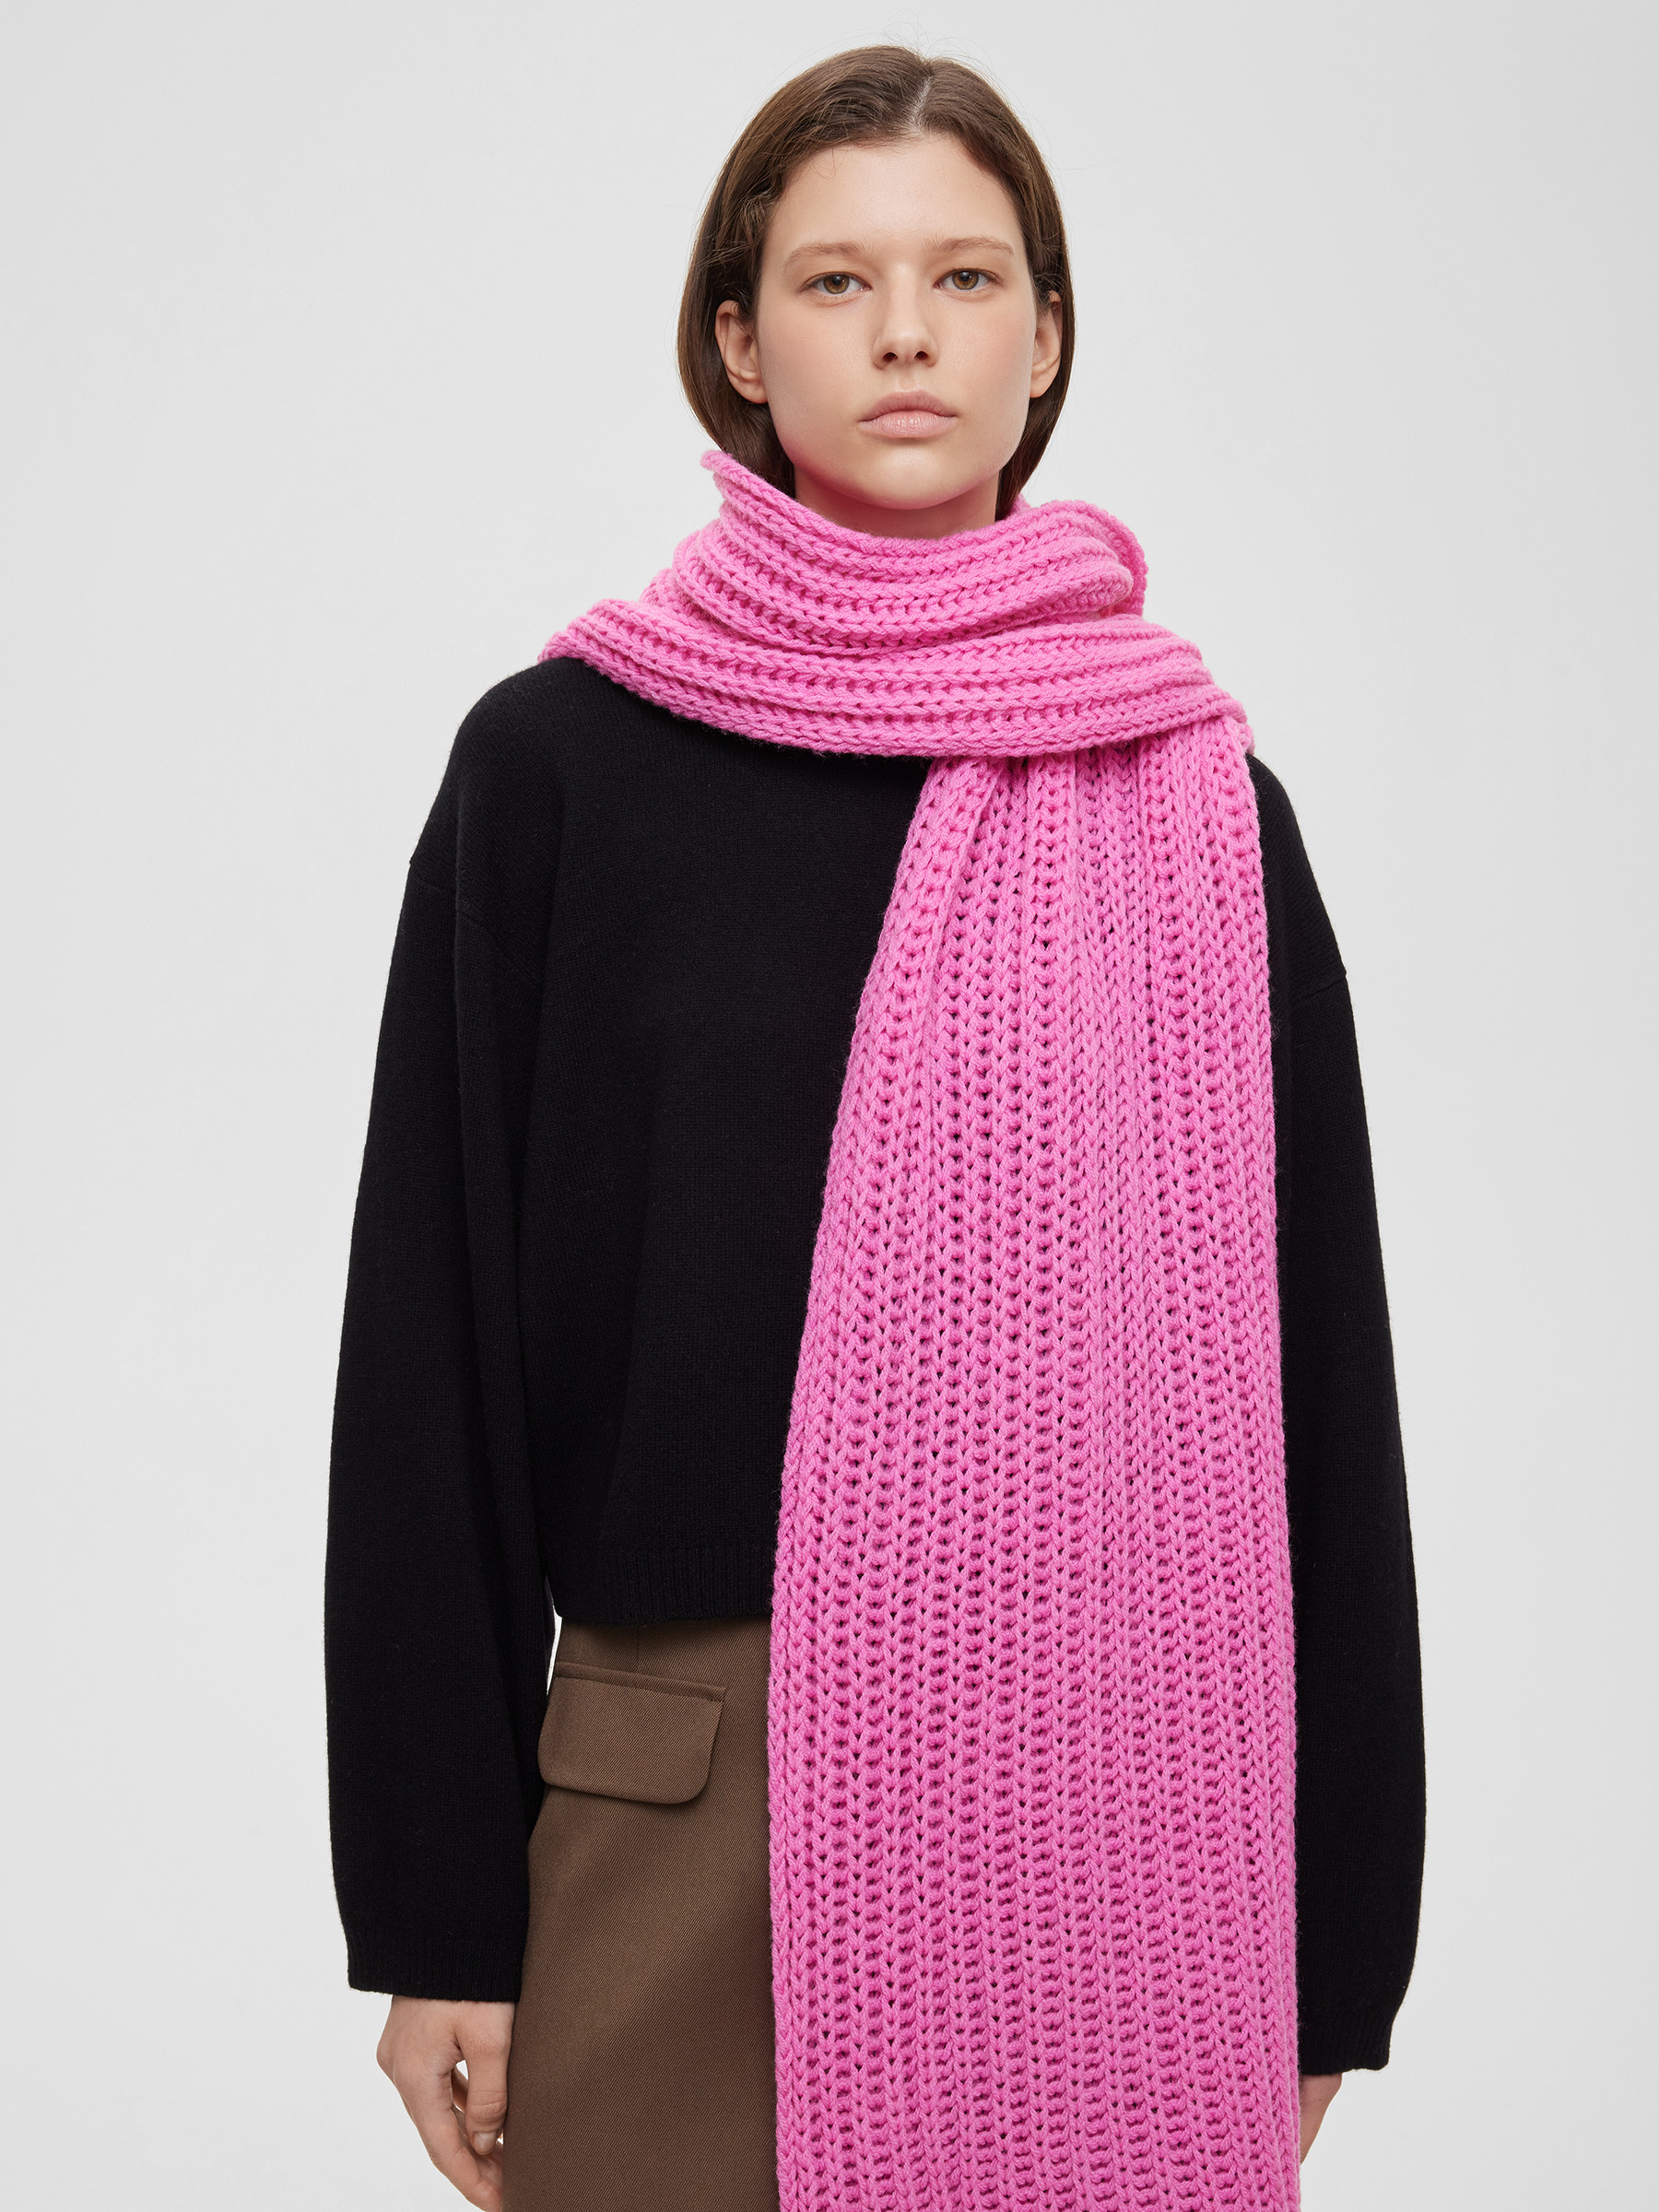 шарф легкий крупной вязки цвет – черный Шарф легкий крупной вязки, цвет – розовая фуксия